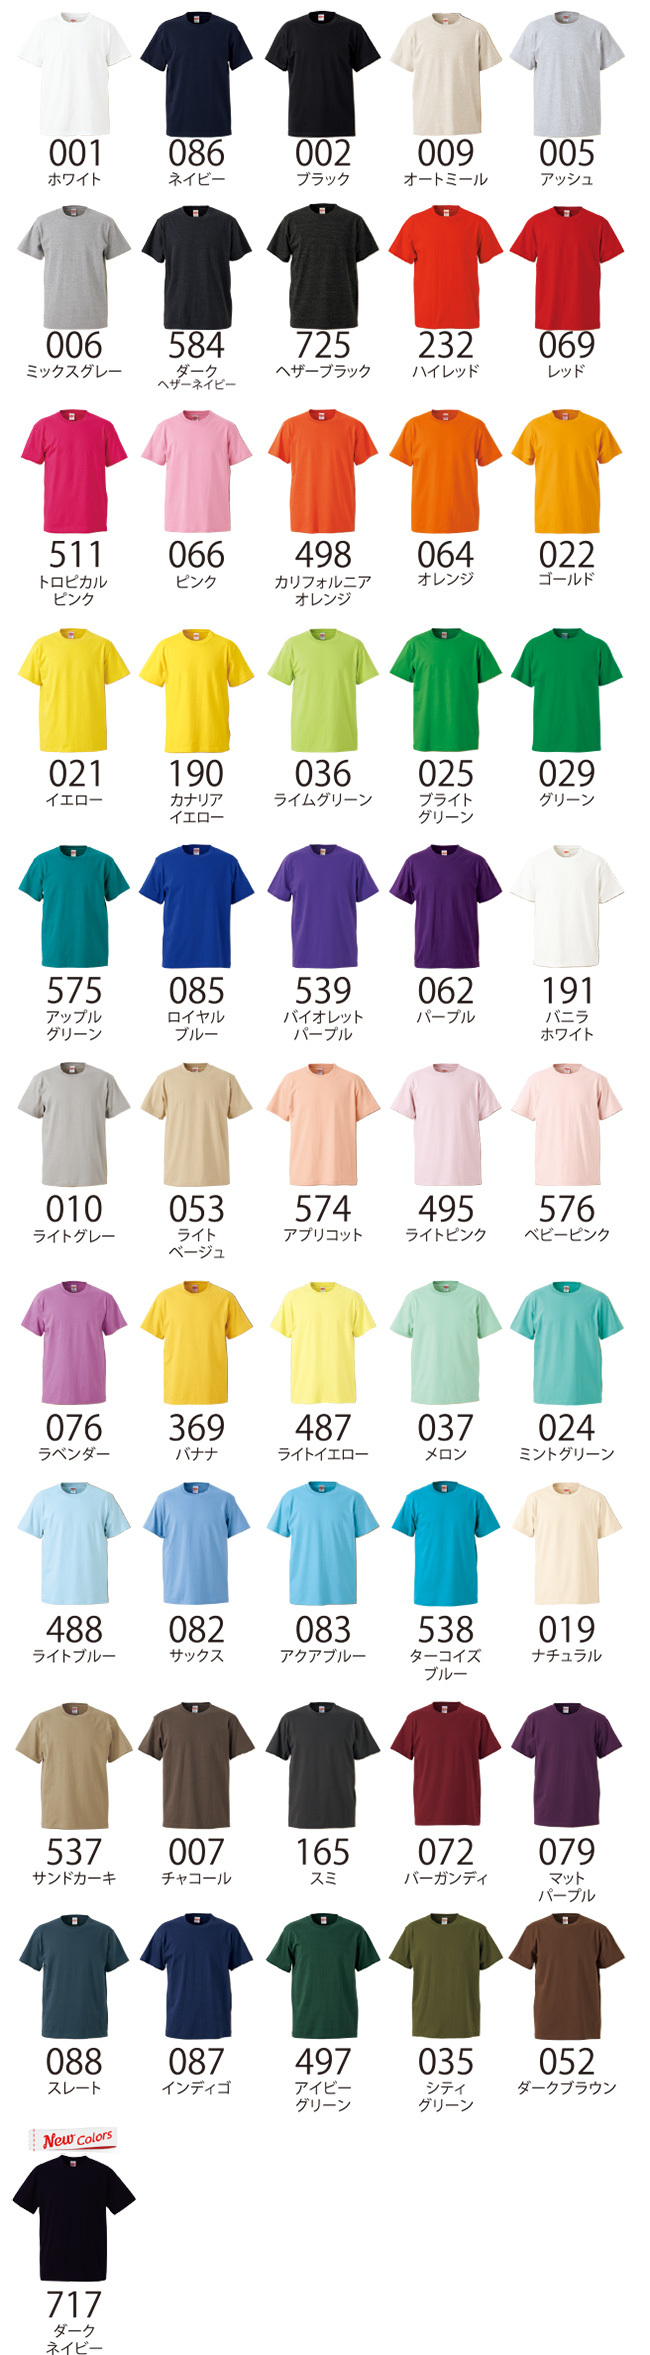 ハイクオリティTシャツ 5001-01のカラーラインナップ